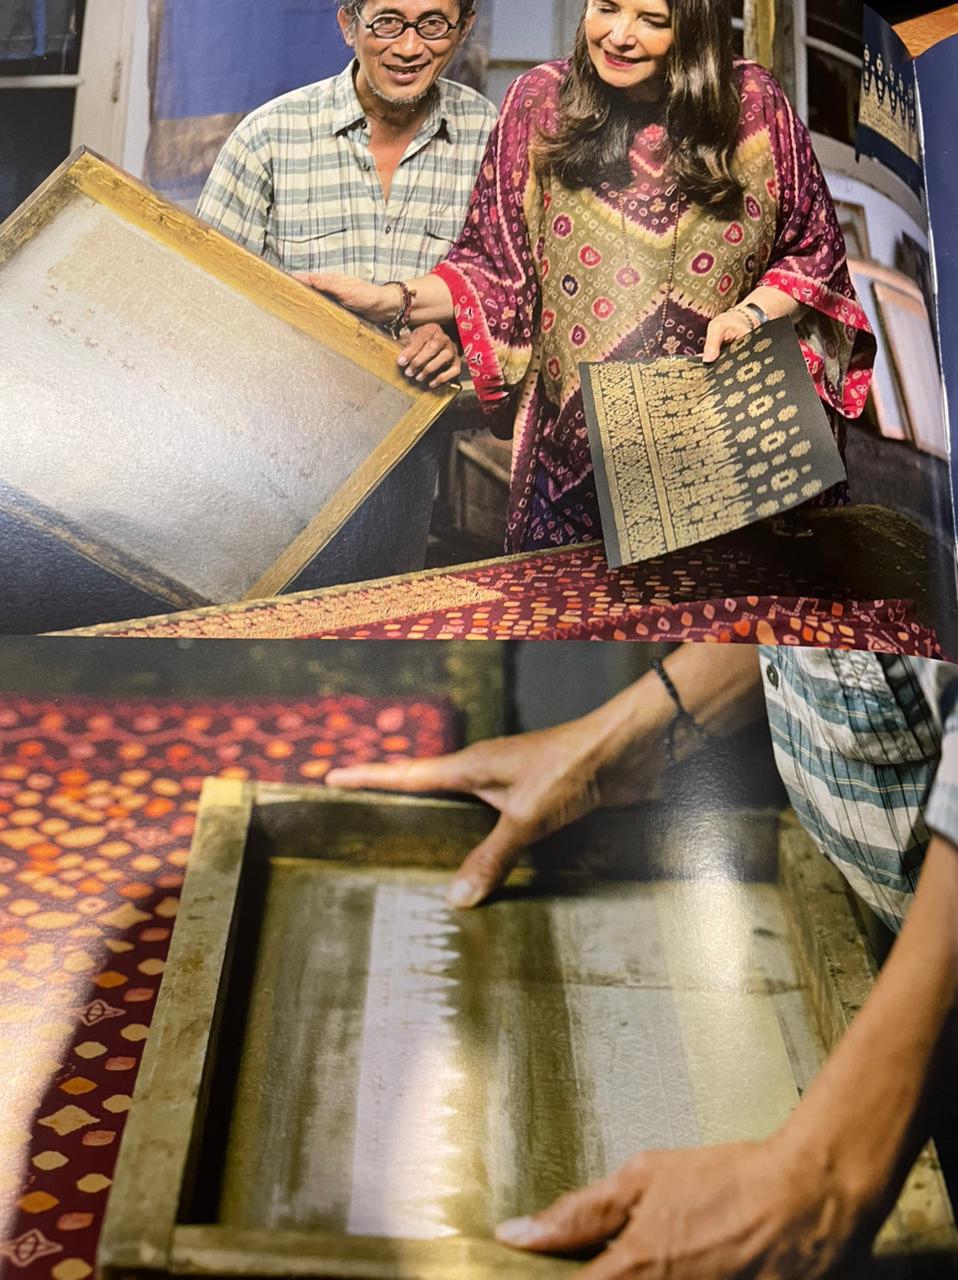 Proses pengembangan dan penciptaan gold print dari inspirasi, gambar, pembuatan screen dan hand printing ke kain hingga embroidery dan jahit / Foto: Courtesy of Ghea Fashion Studio